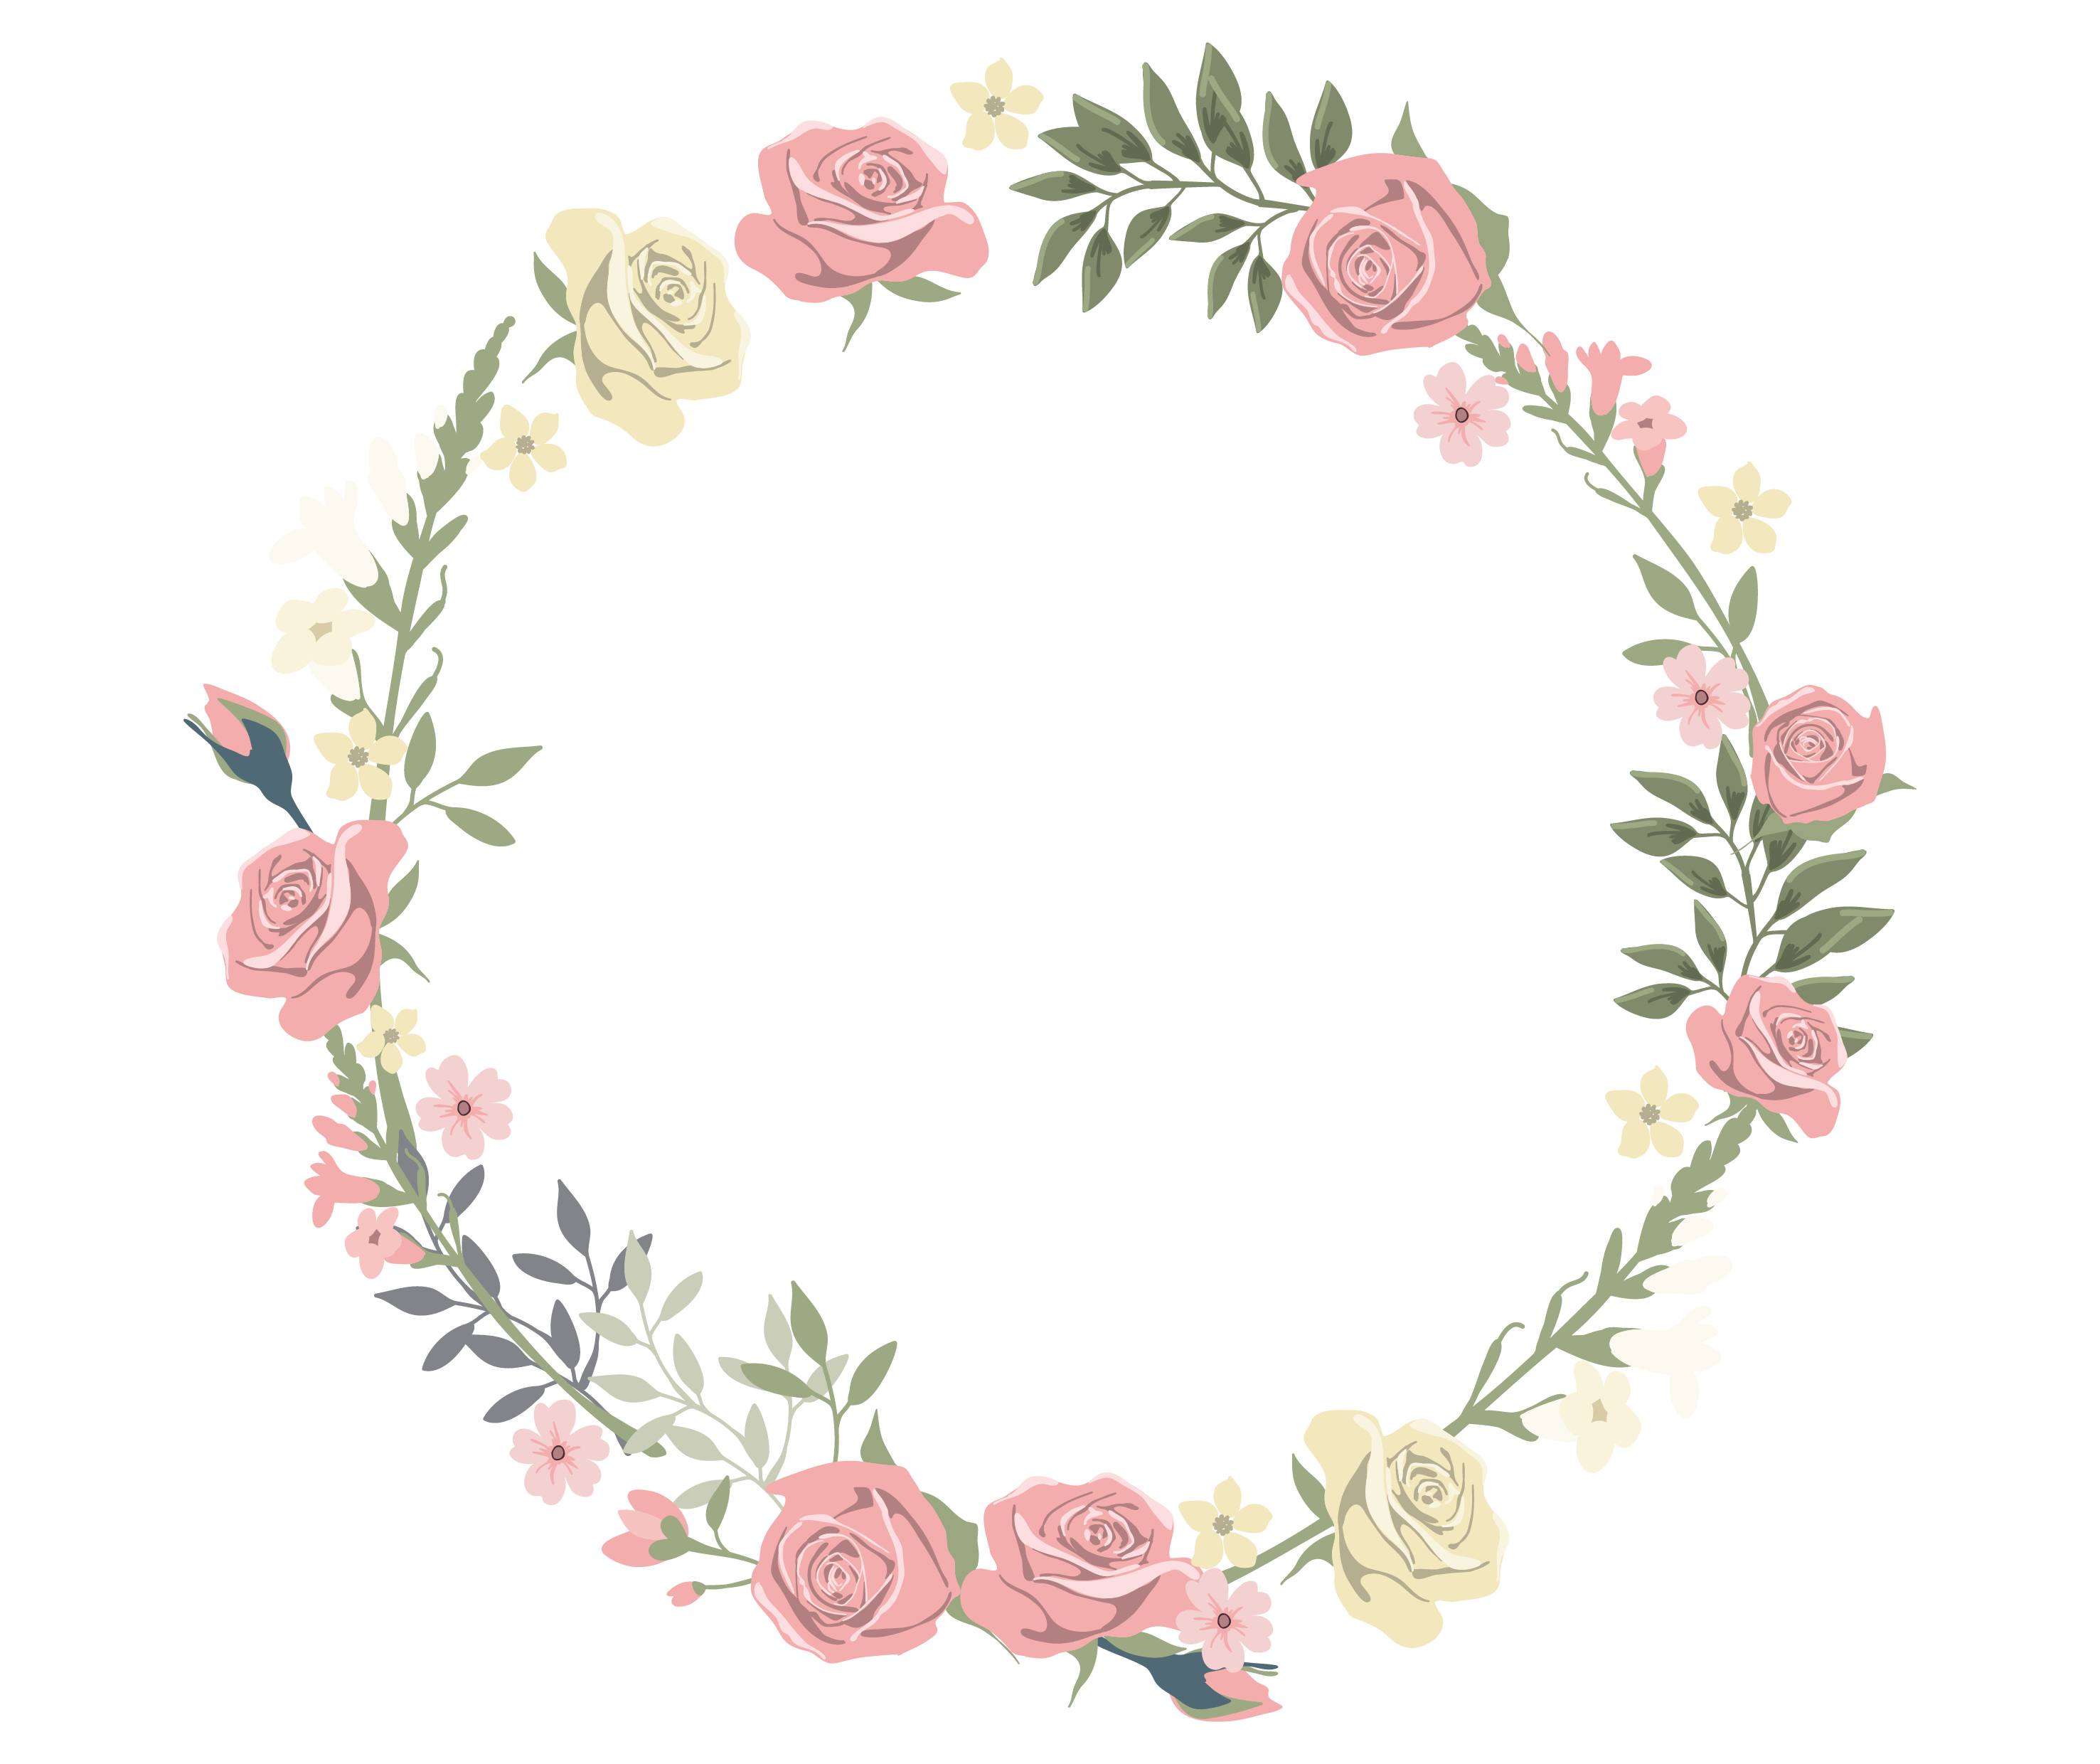 Imagen floral del fondo PNG del marco